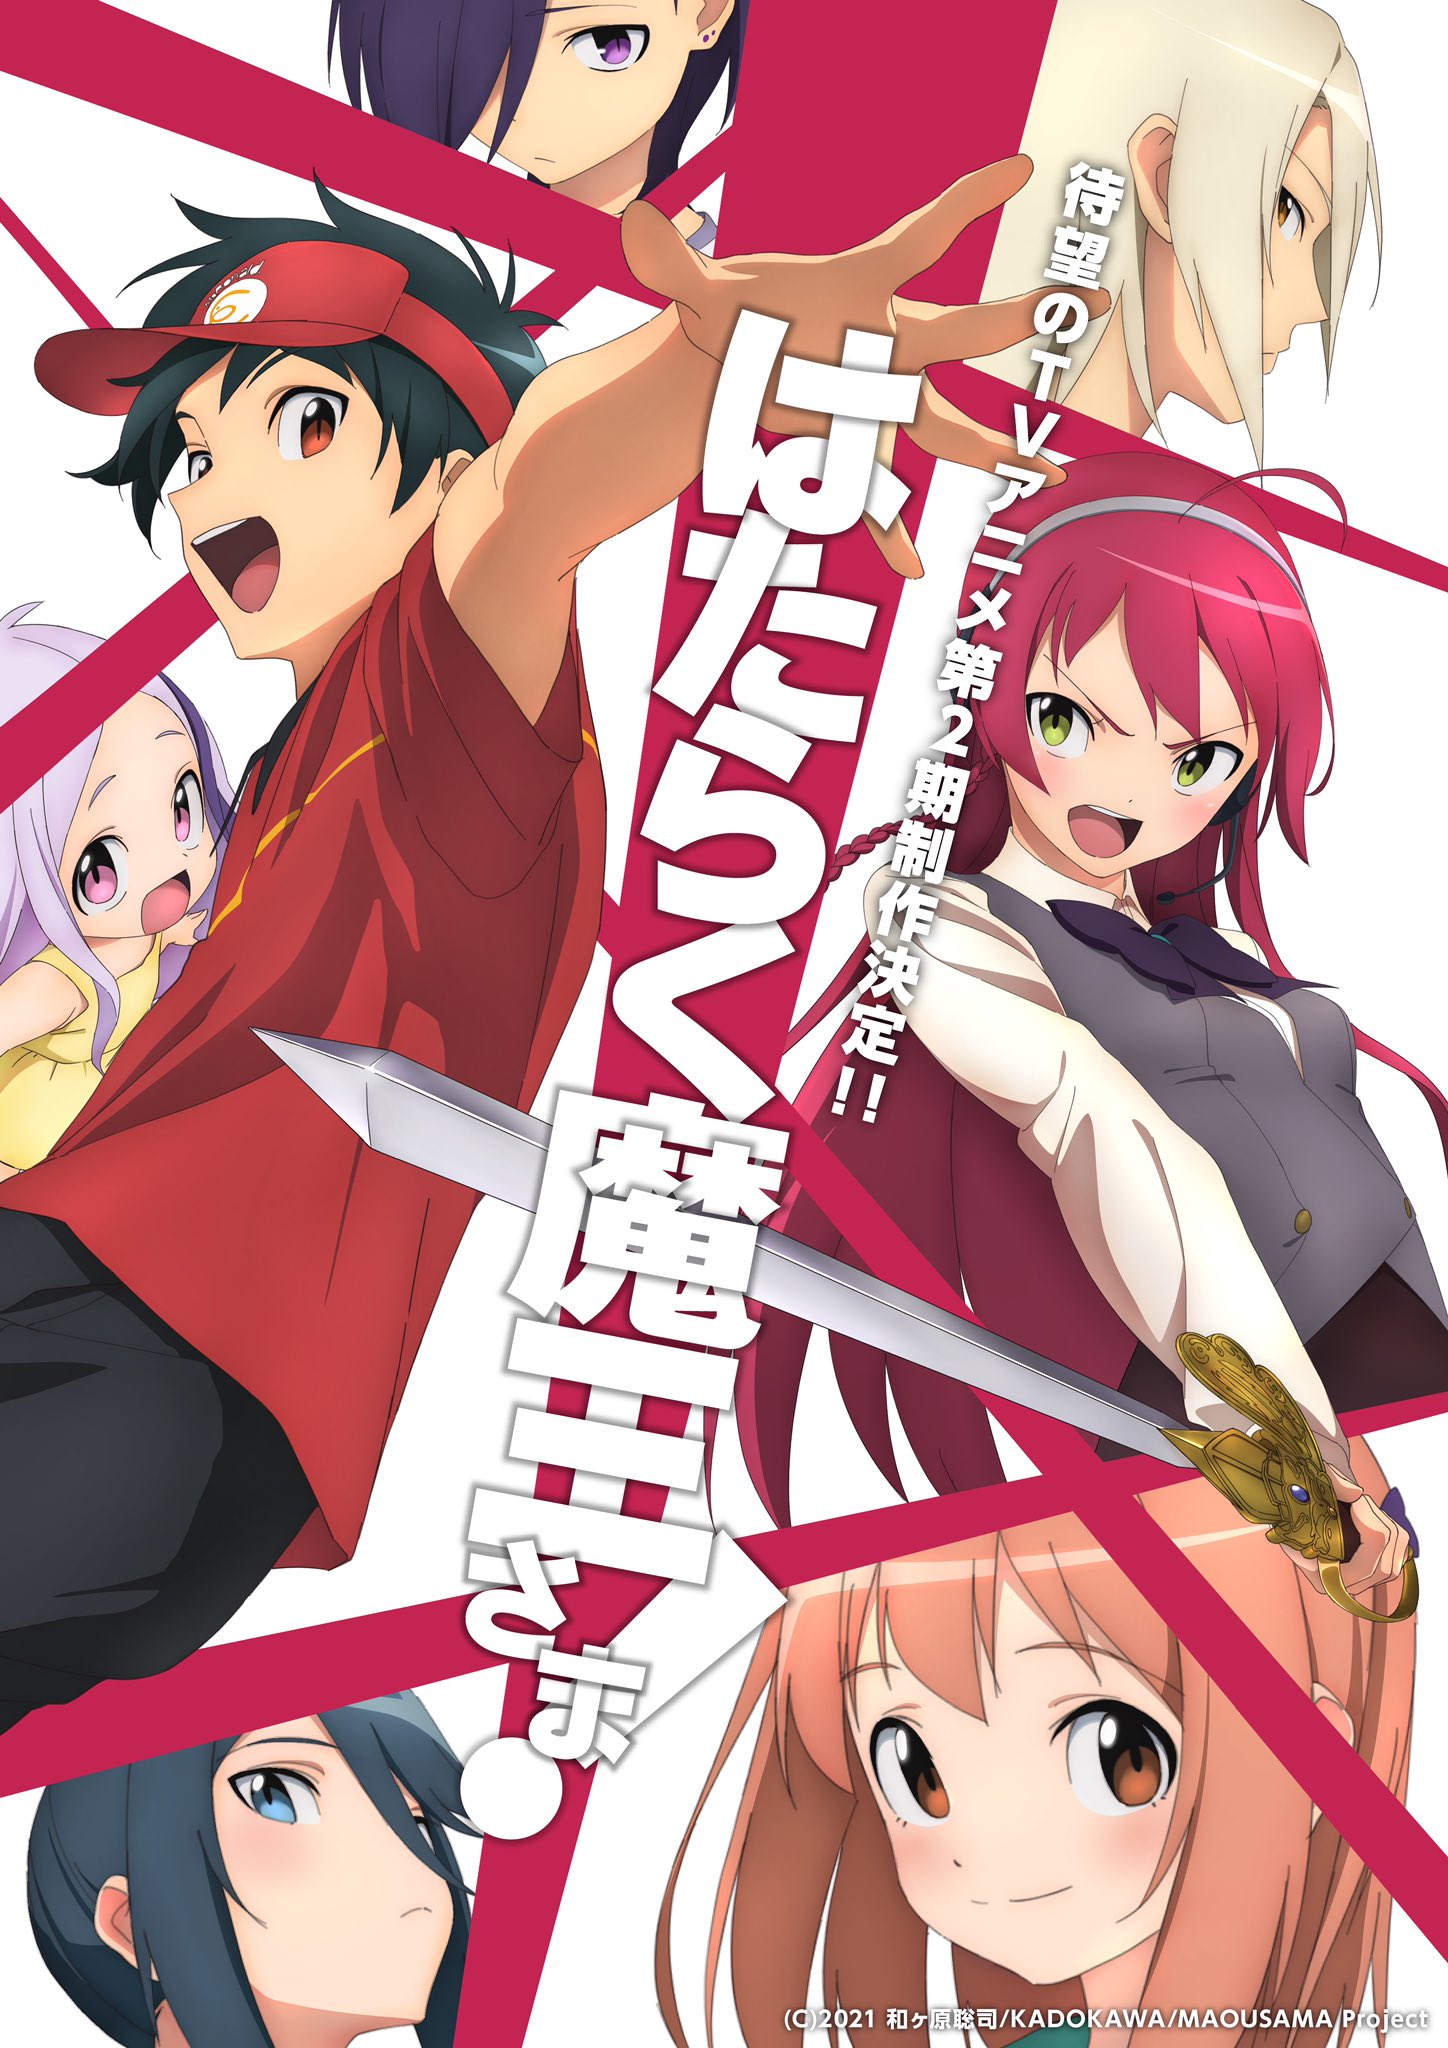 Adaptação em anime de Maou-sama, Retry! ganha primeiro vídeo promocional,  previsão de estreia e mais detalhes sobre a produção - Crunchyroll Notícias